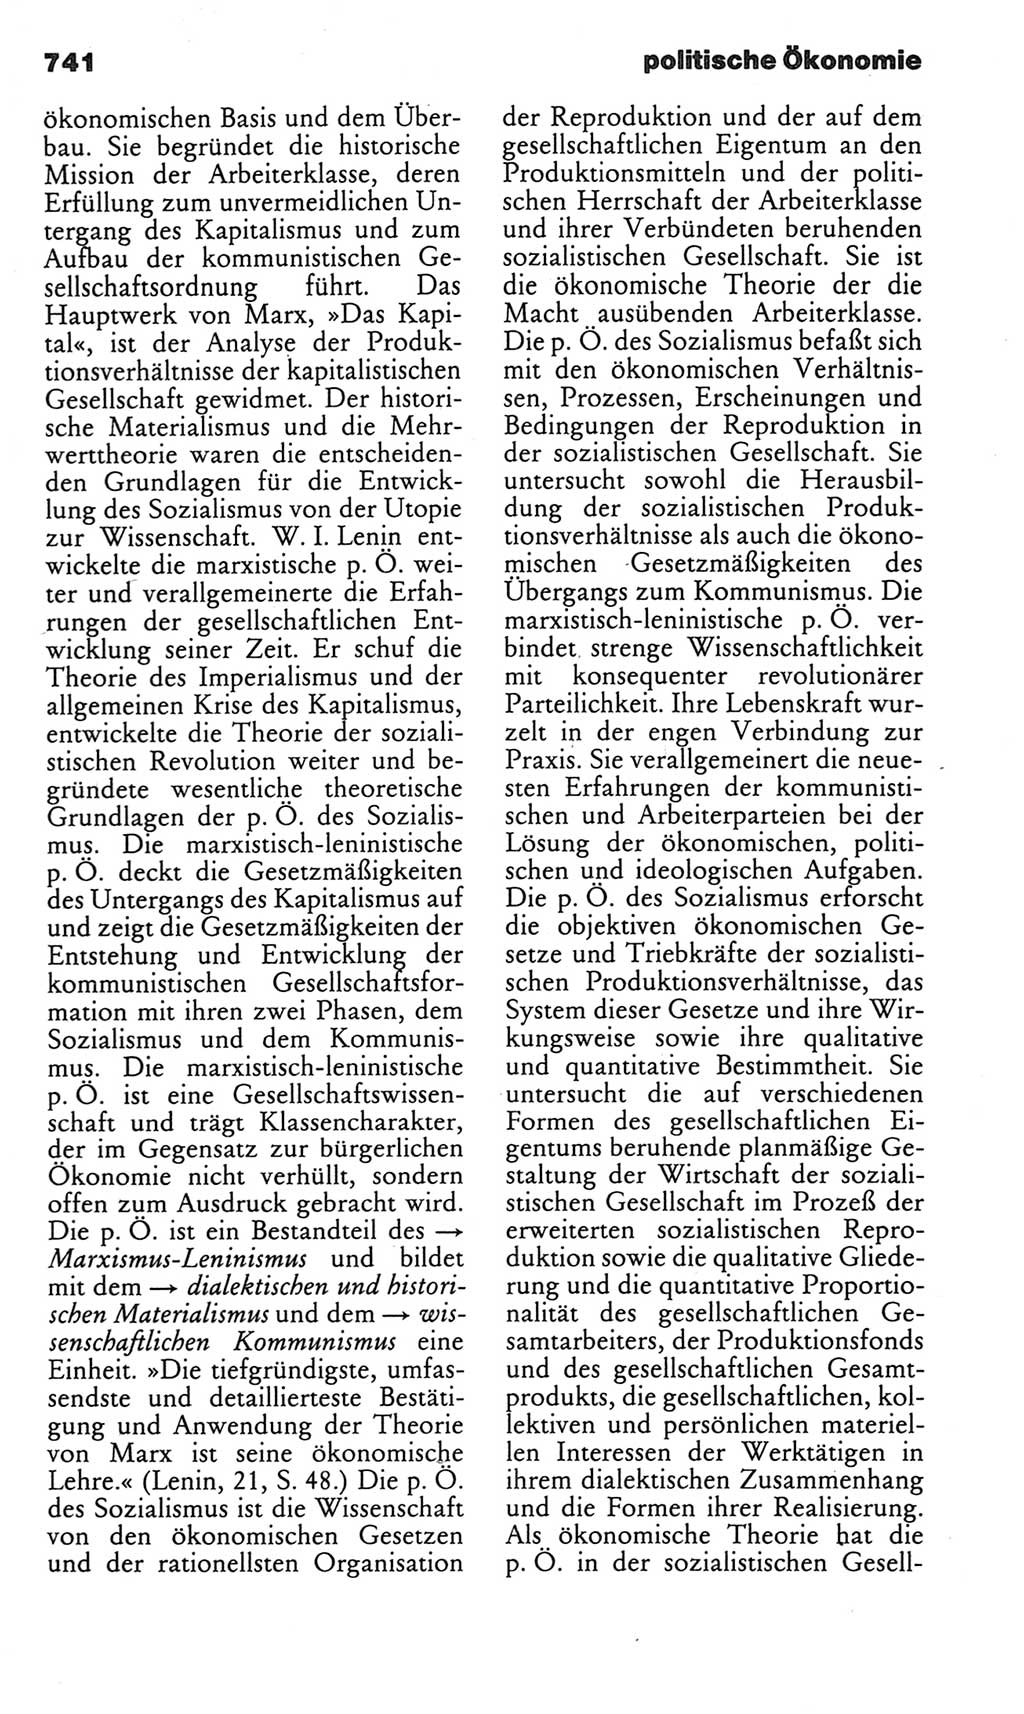 Kleines politisches Wörterbuch [Deutsche Demokratische Republik (DDR)] 1983, Seite 741 (Kl. pol. Wb. DDR 1983, S. 741)